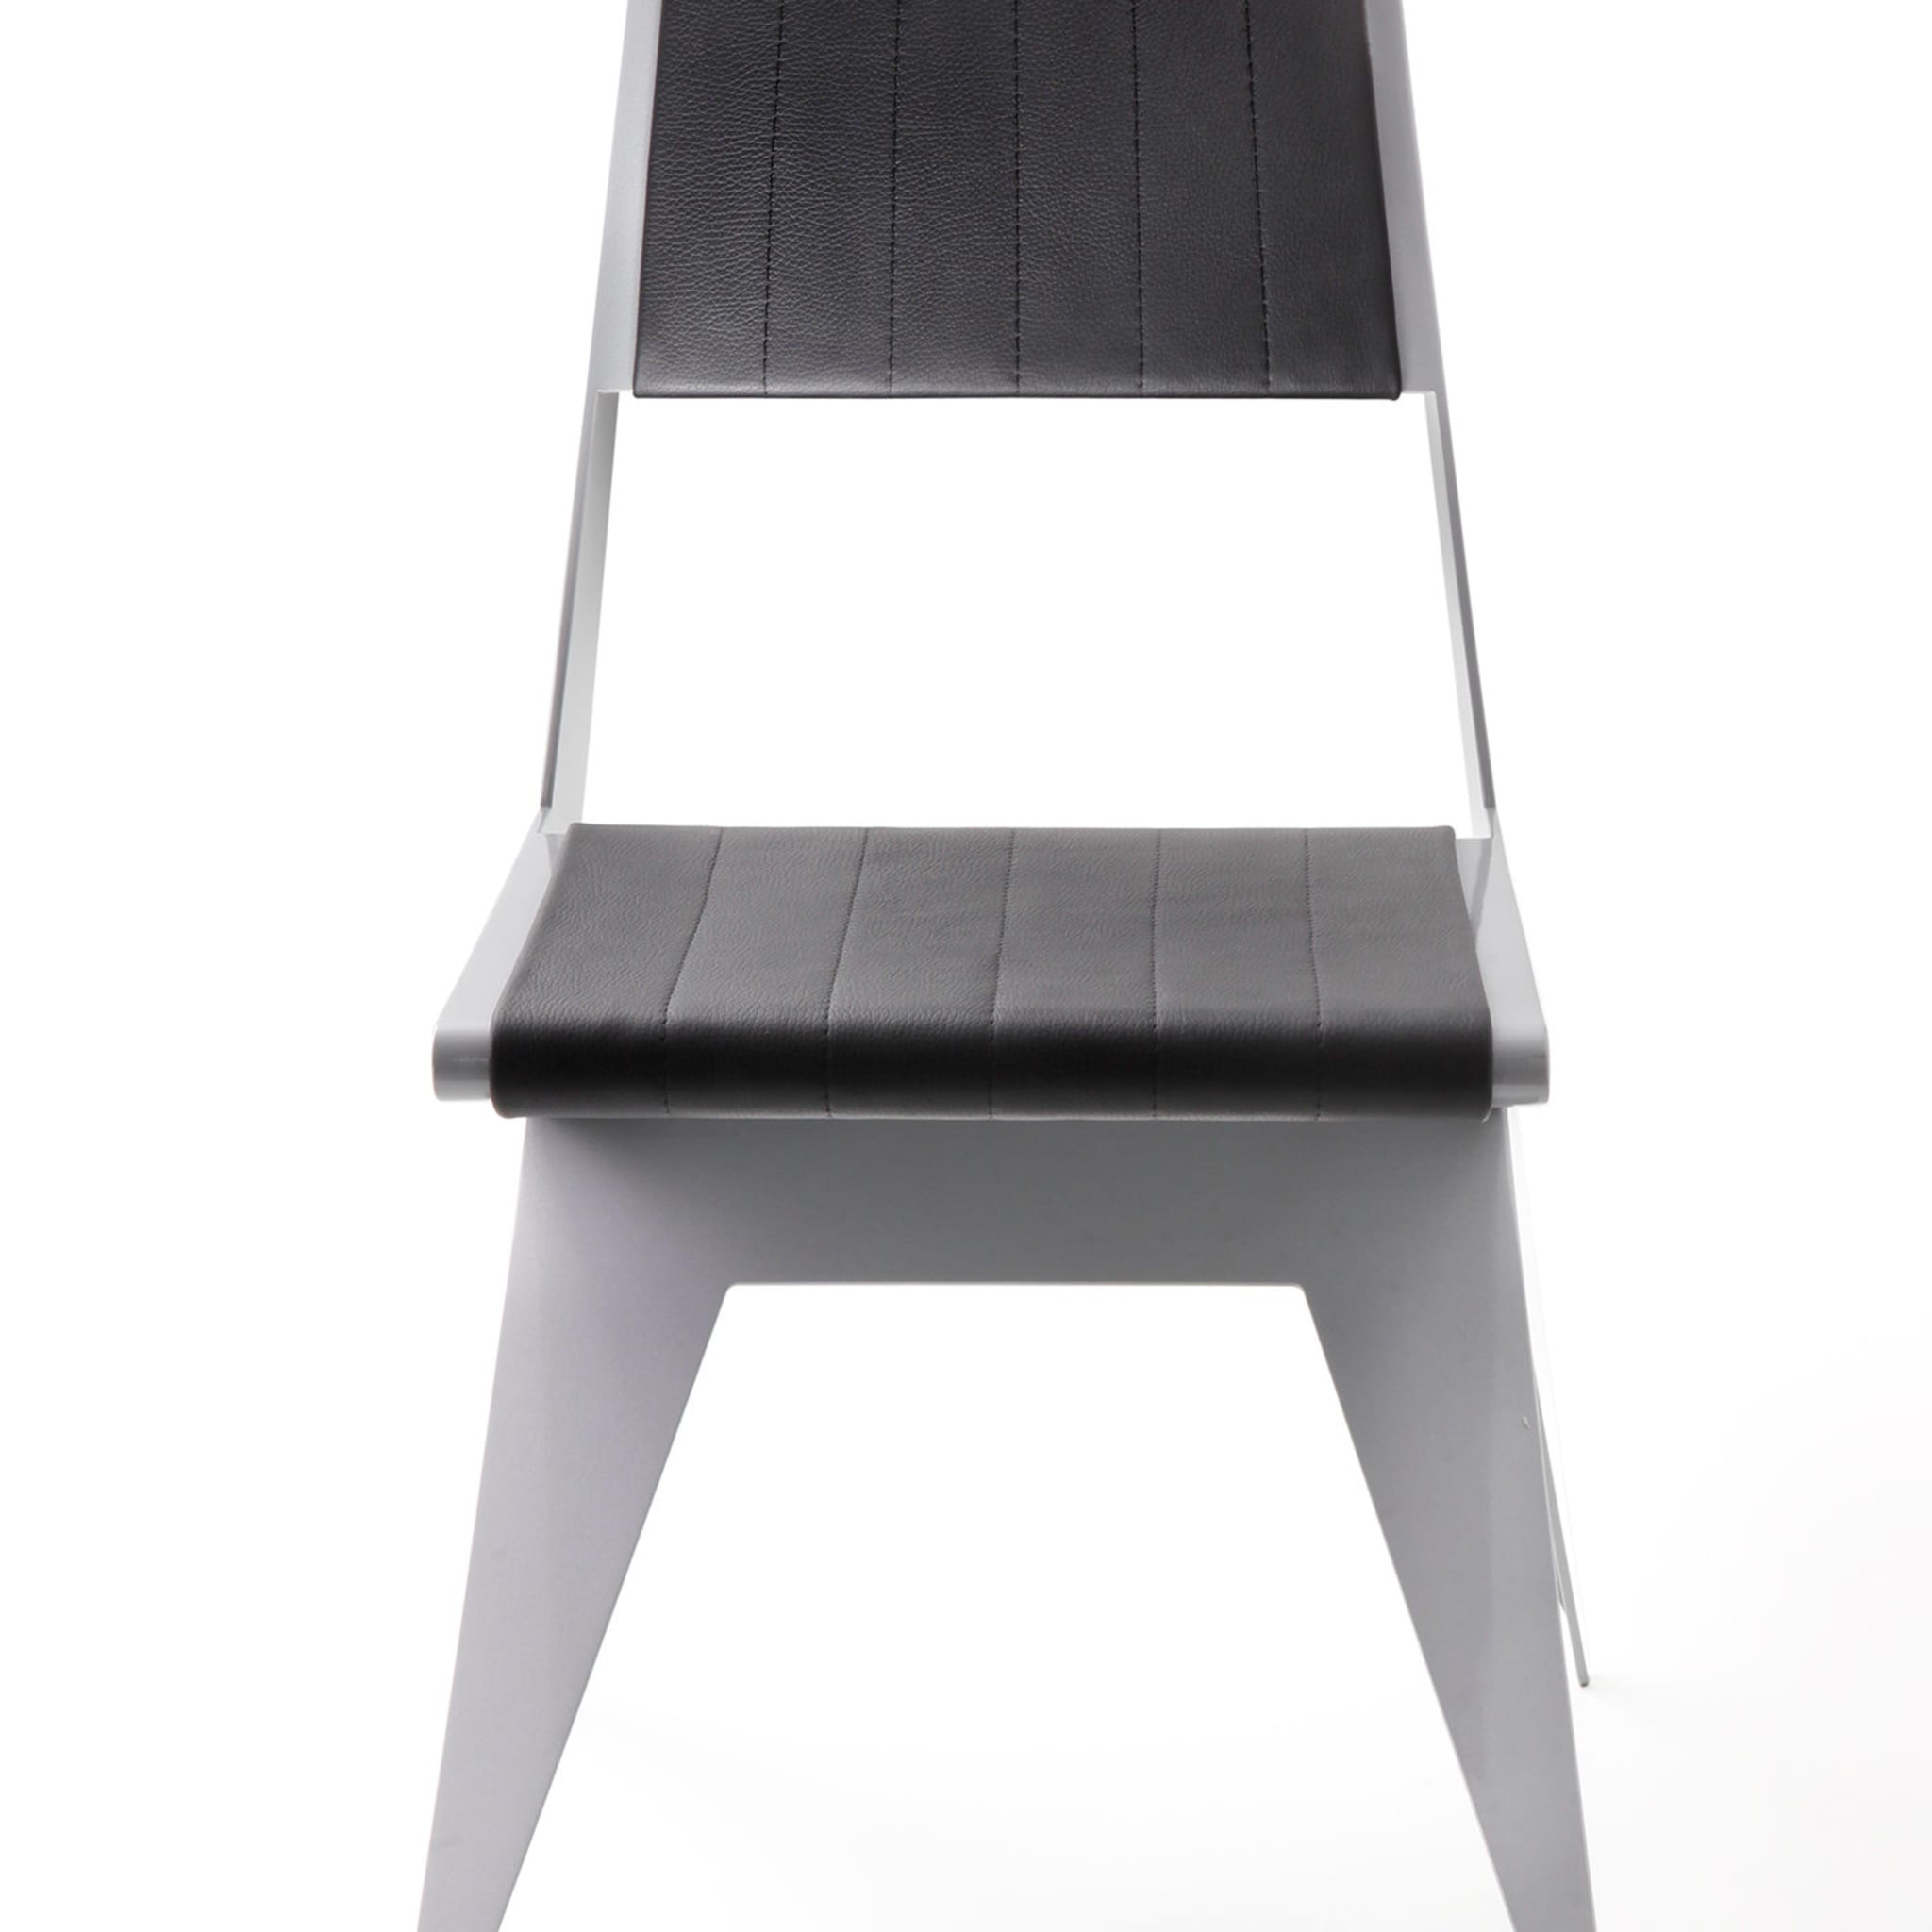 Star Silver Chair by Antonio Pio Saracino - Alternative view 2